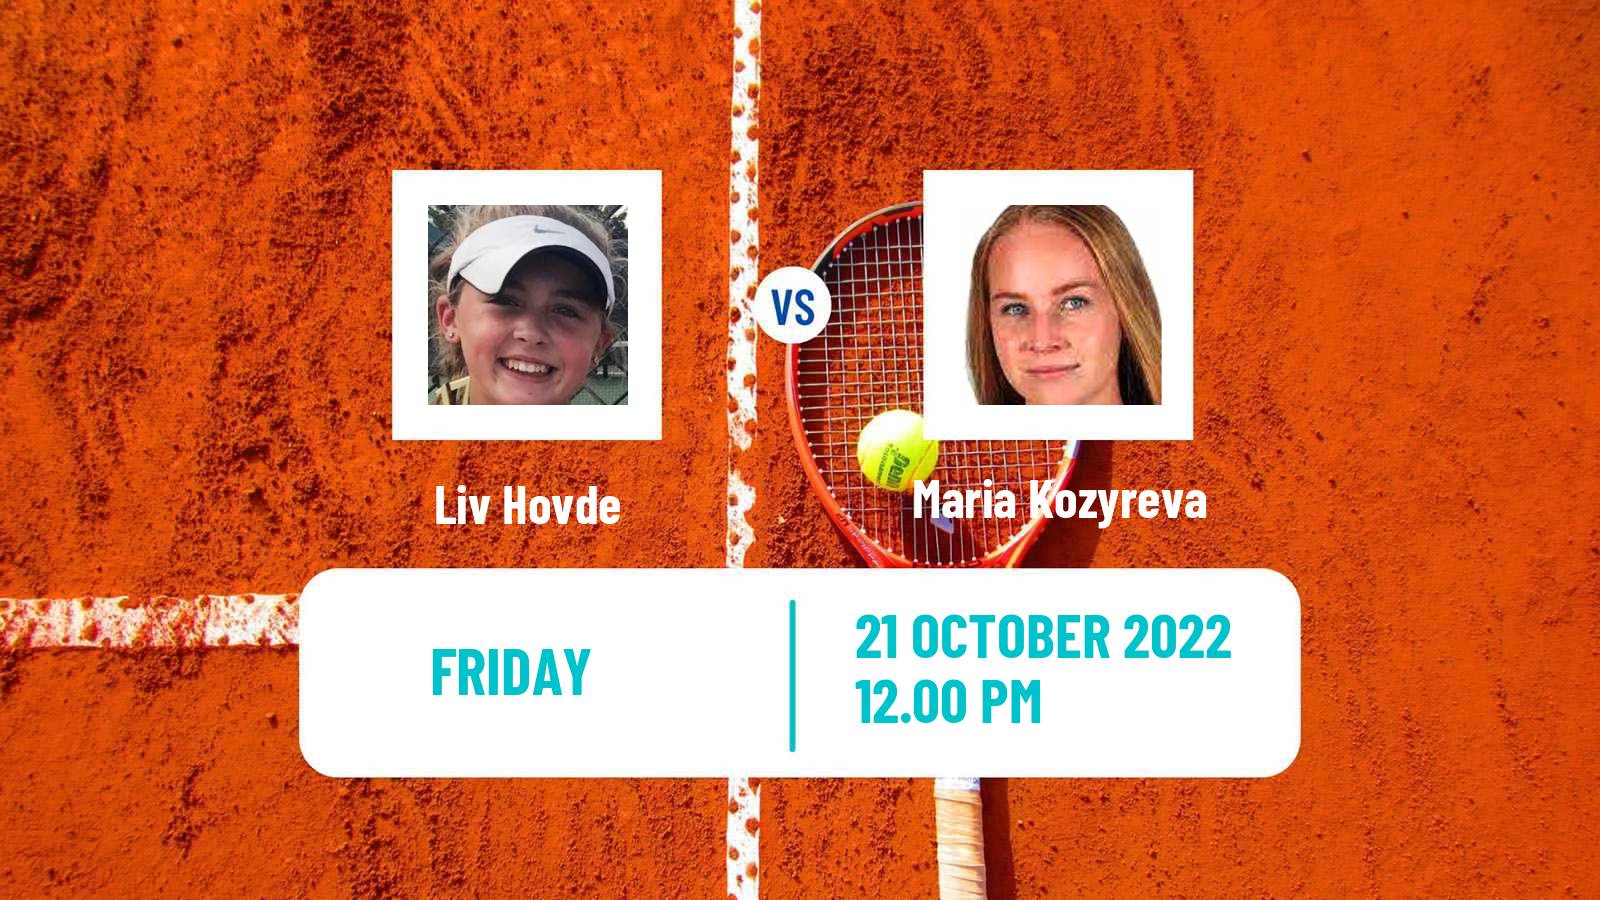 Tennis ITF Tournaments Liv Hovde - Maria Kozyreva